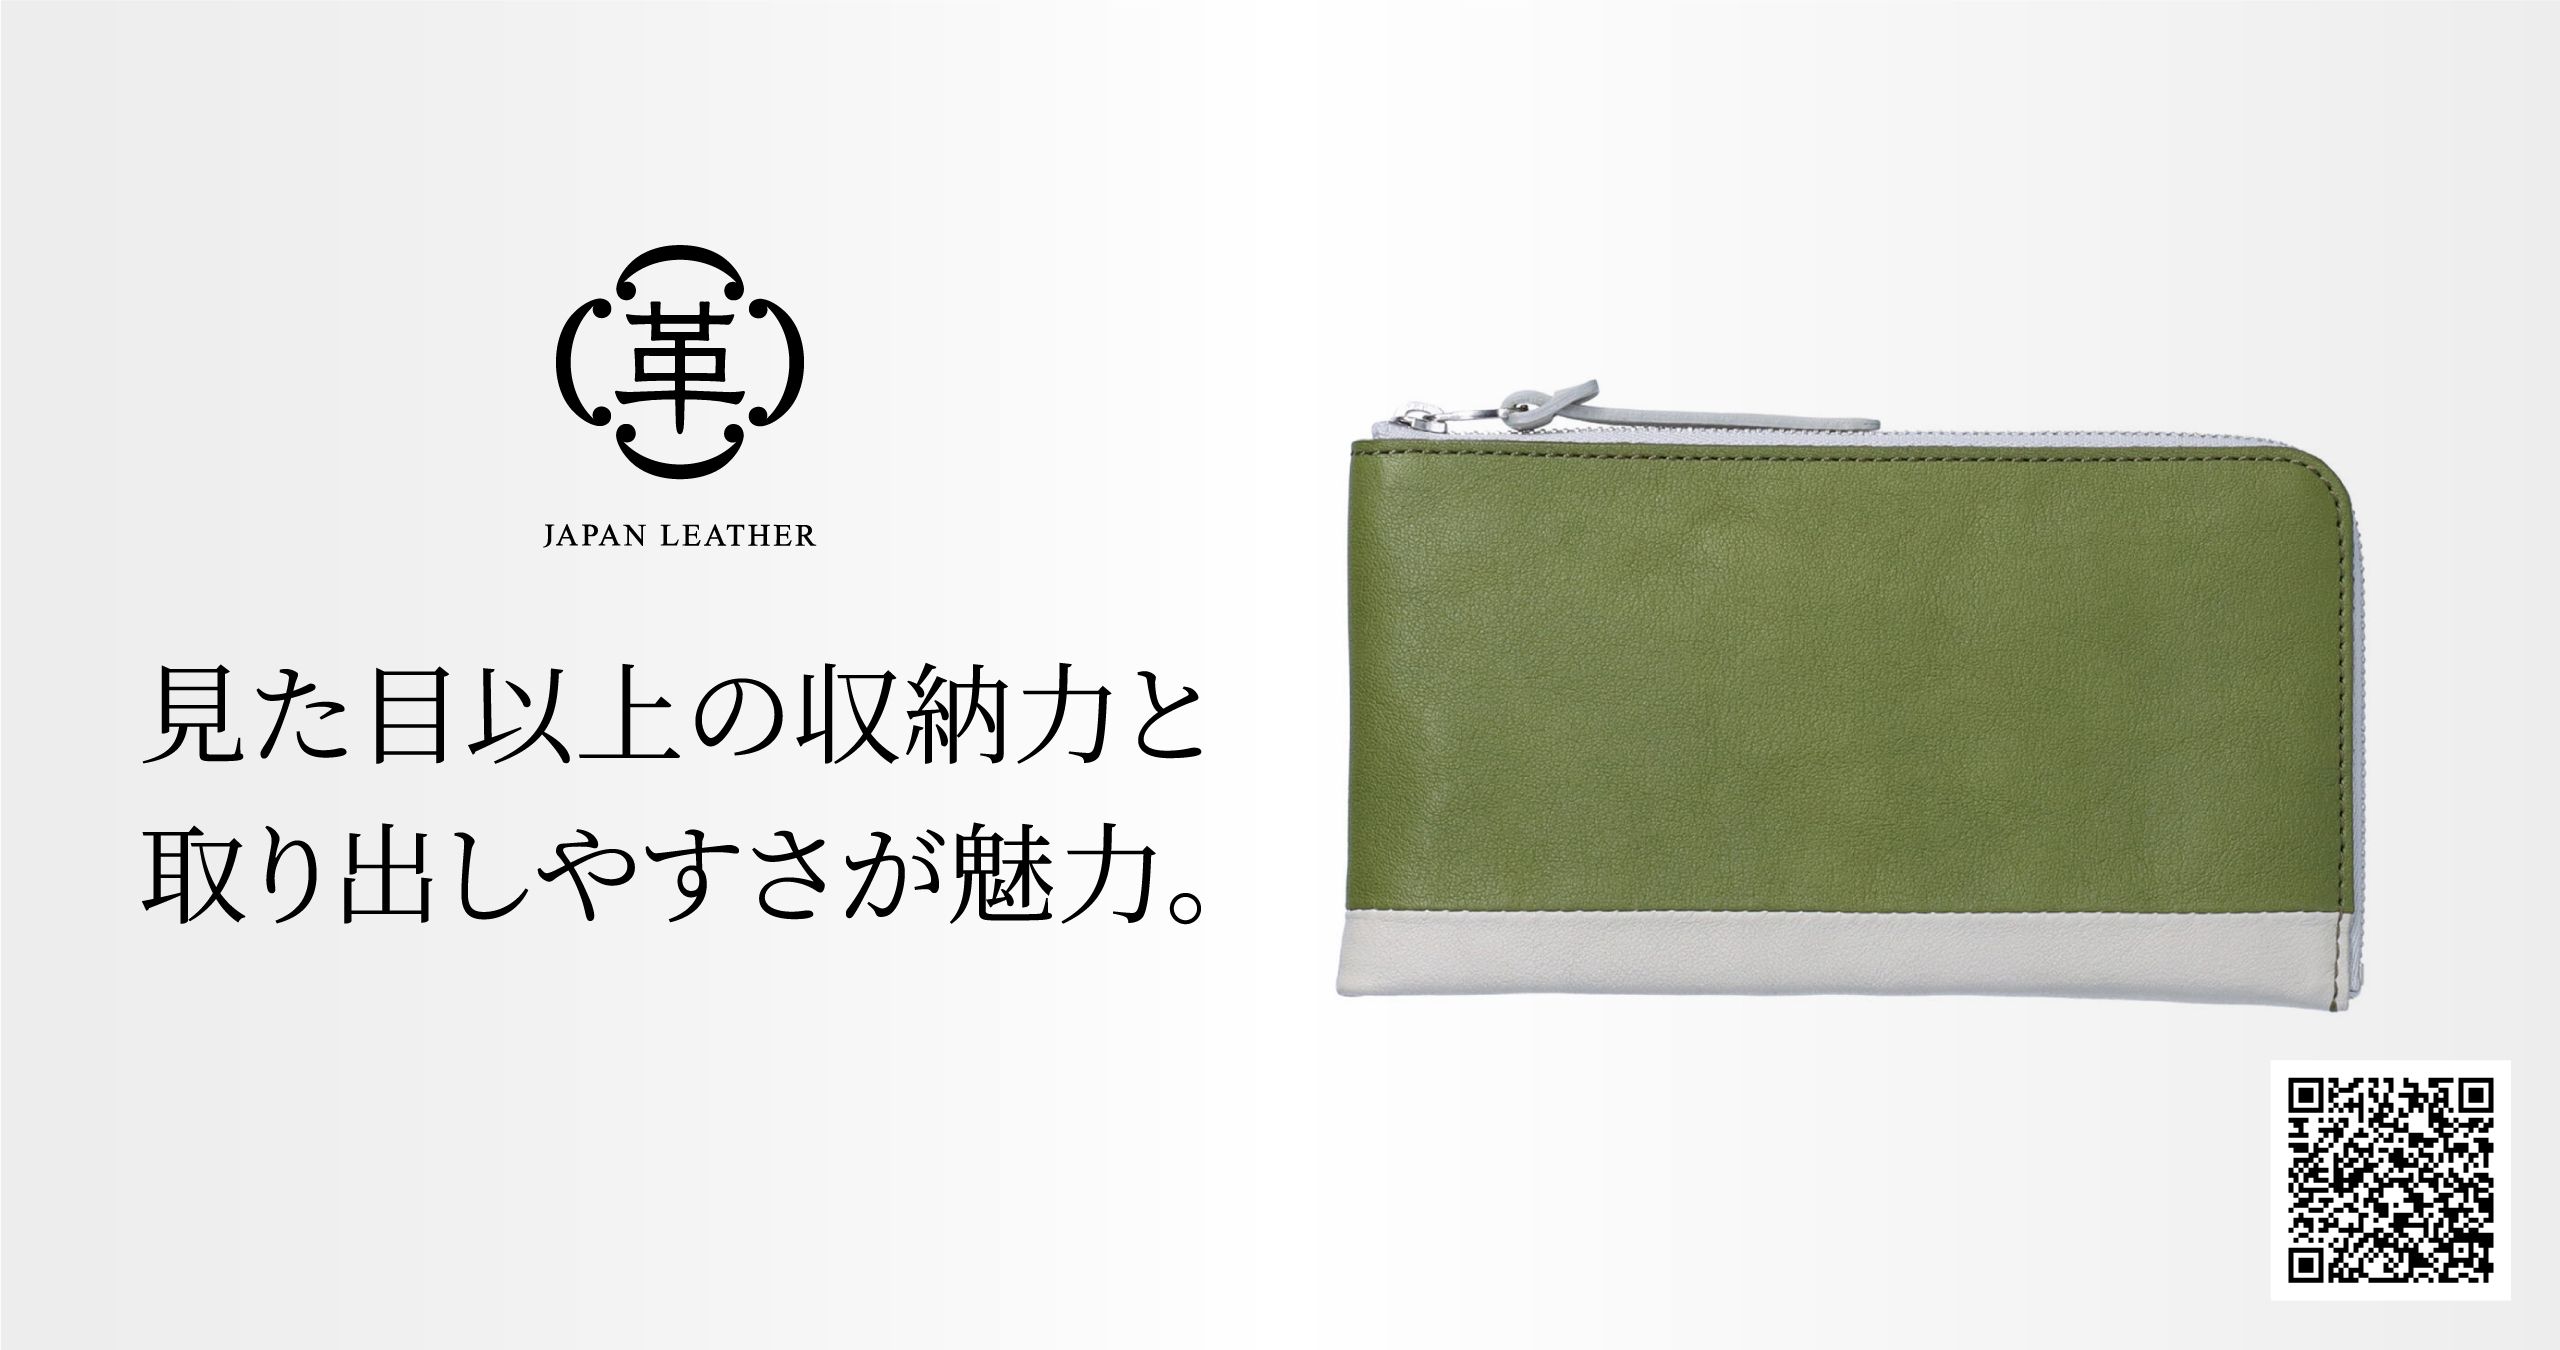 ⑧ ヌメ革 牛革 L 字ファスナー 小型 薄型 長財布 - b8ta Japan